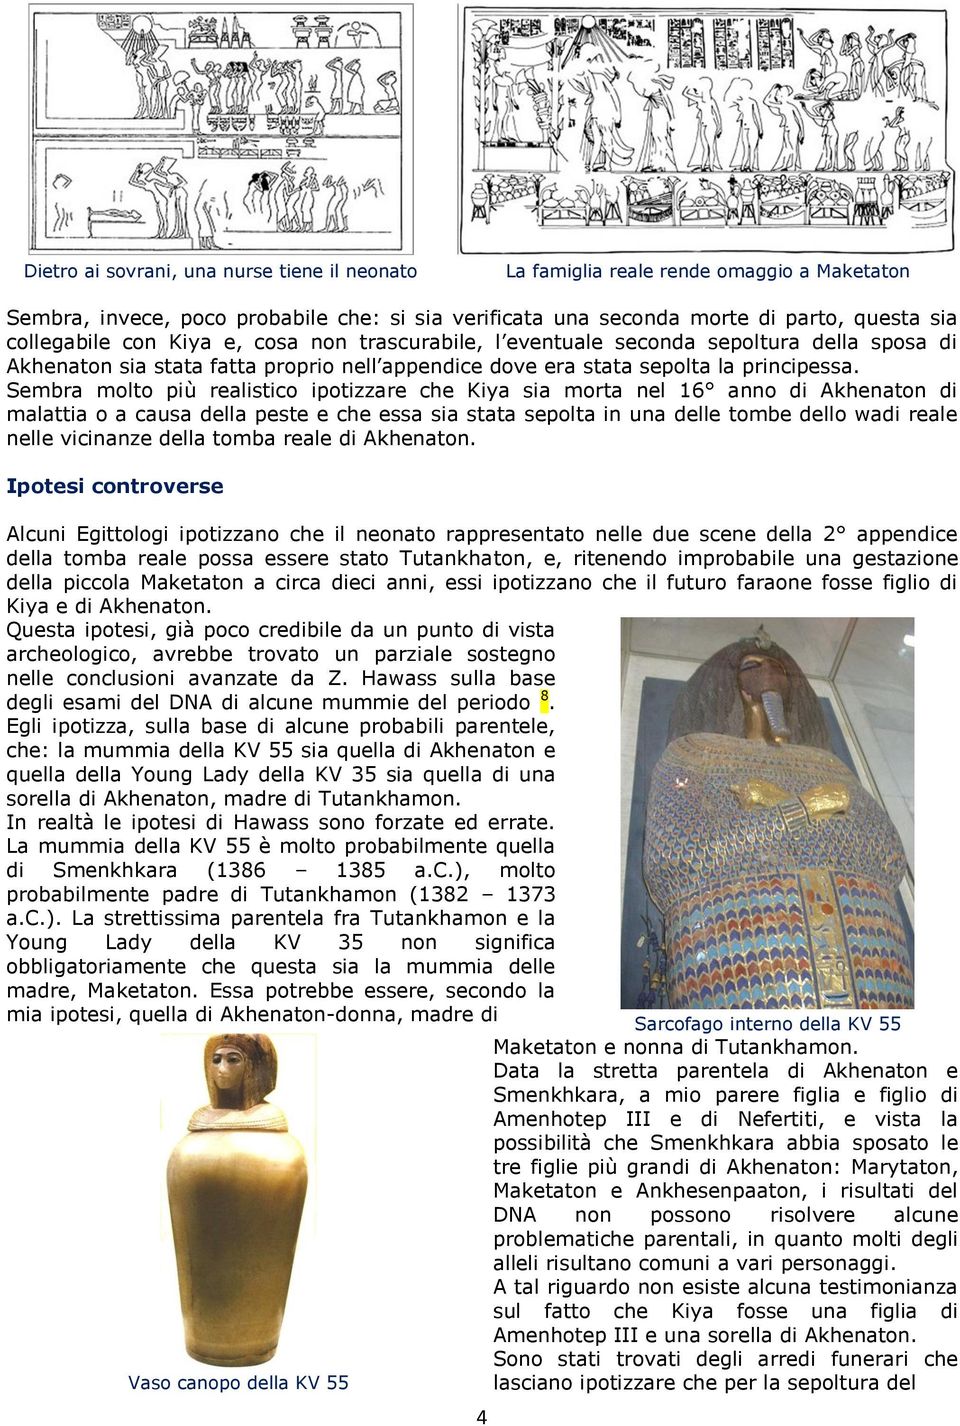 Sembra molto più realistico ipotizzare che Kiya sia morta nel 16 anno di Akhenaton di malattia o a causa della peste e che essa sia stata sepolta in una delle tombe dello wadi reale nelle vicinanze